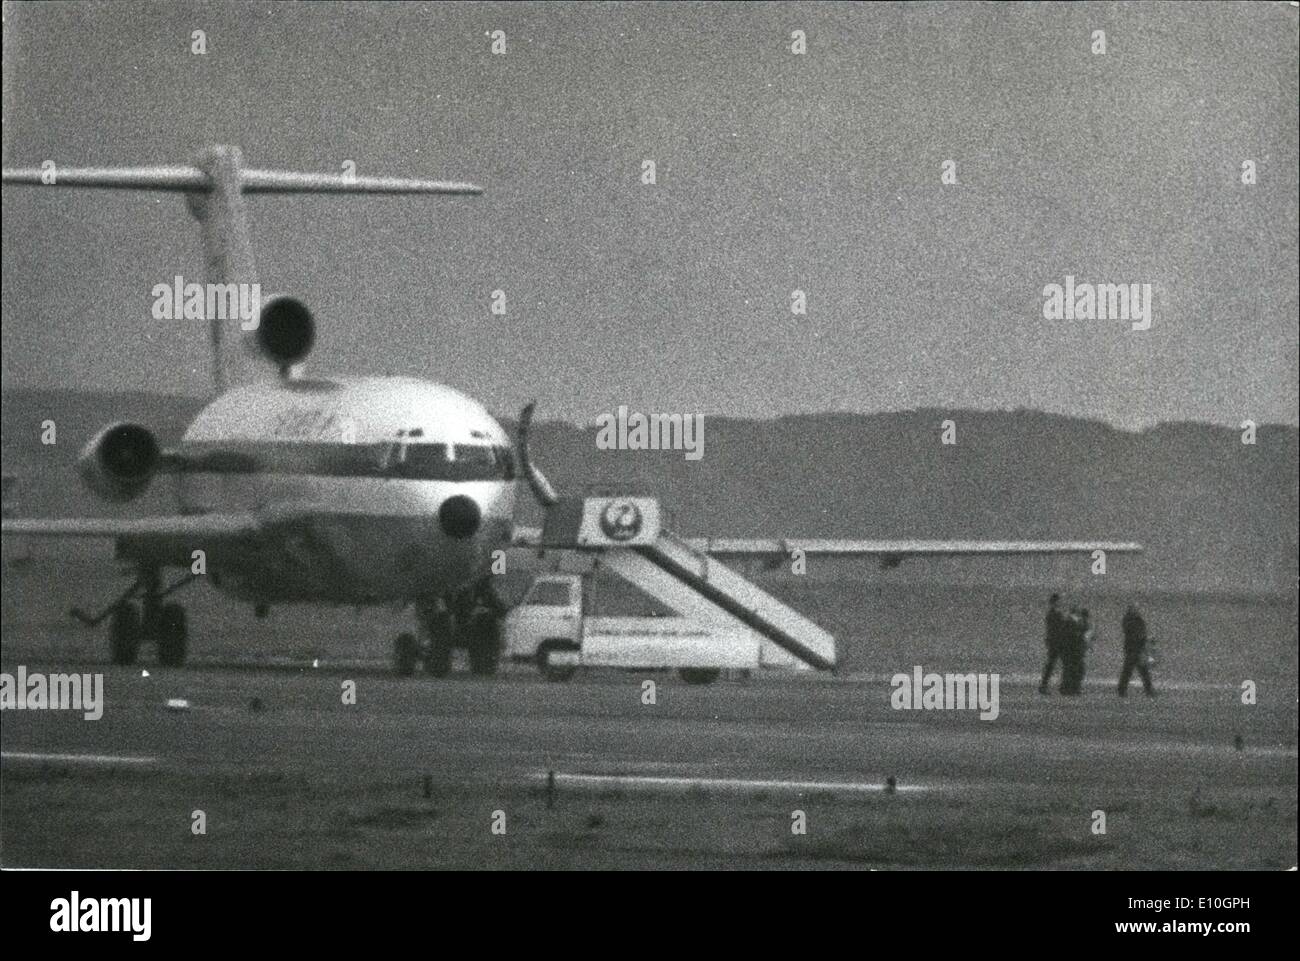 11. November 1972 - japanische Entführer in Aktion: Tatsuji Nakaoka (47) hält seine geladene Pistole auf die drei Besatzungsmitglieder, wie sie im Gänsemarsch die Hände gebunden von der Japan Air Lines 747 er entführt gehen hatte, um eine Boeing DC-8, wo er gefangen von der Tokyo Polizei versteckt im Flugzeug genommen wurde. Nakoaka machte den Fehler, der Entführung die 747, deren Reichweite nicht ihm nach Kuba über Vancouver und Mexiko mit 2 Millionen US-Dollar Lösegeld fliegen konnte Stockfoto